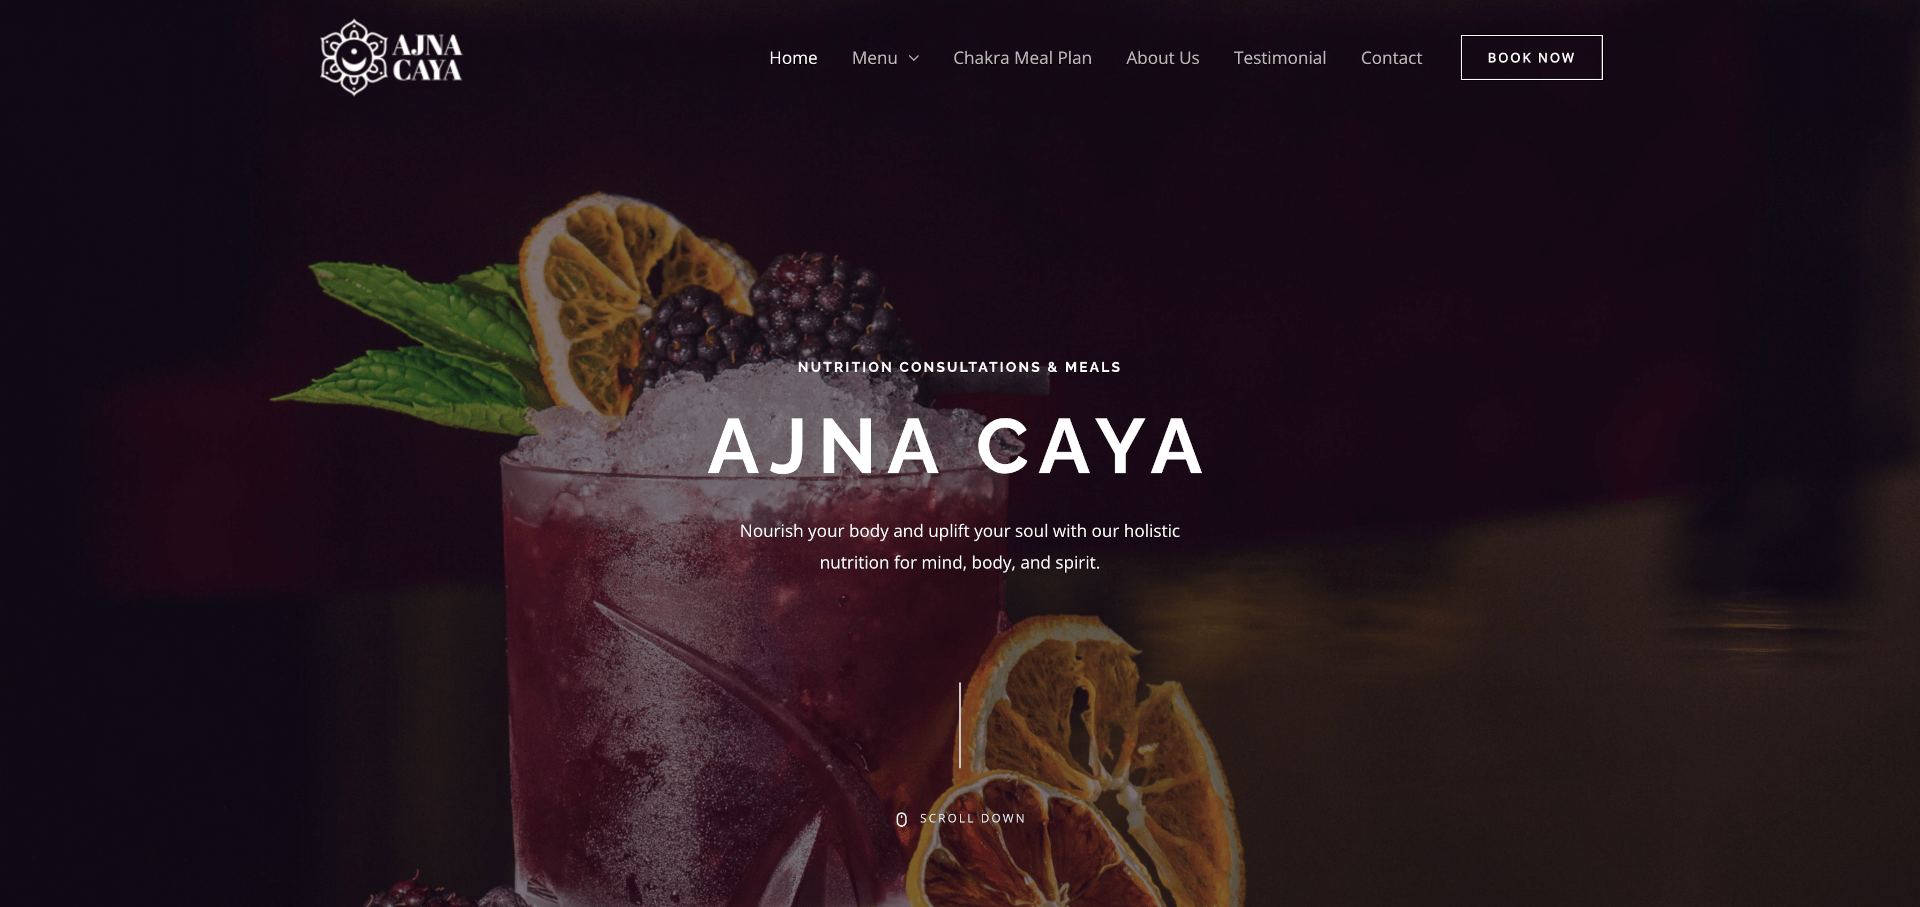 Website homepage for ajnacaya.com